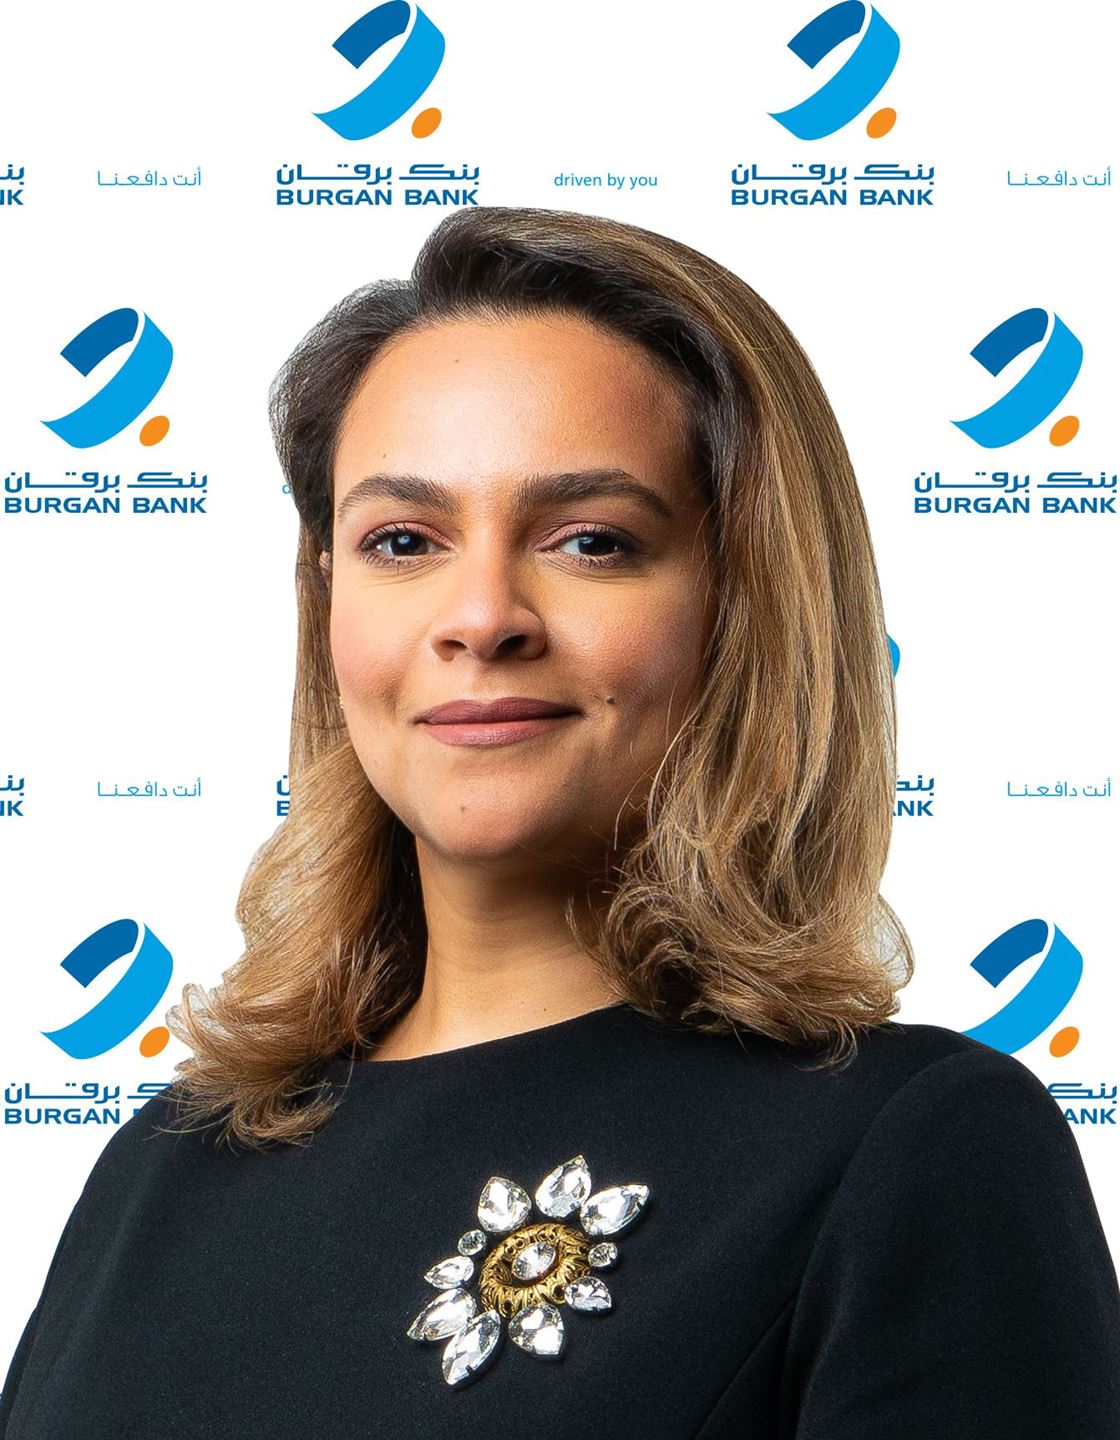 Ms. Dalal Yousef Al Sane, Head of Debt Capital Markets at Burgan Bank